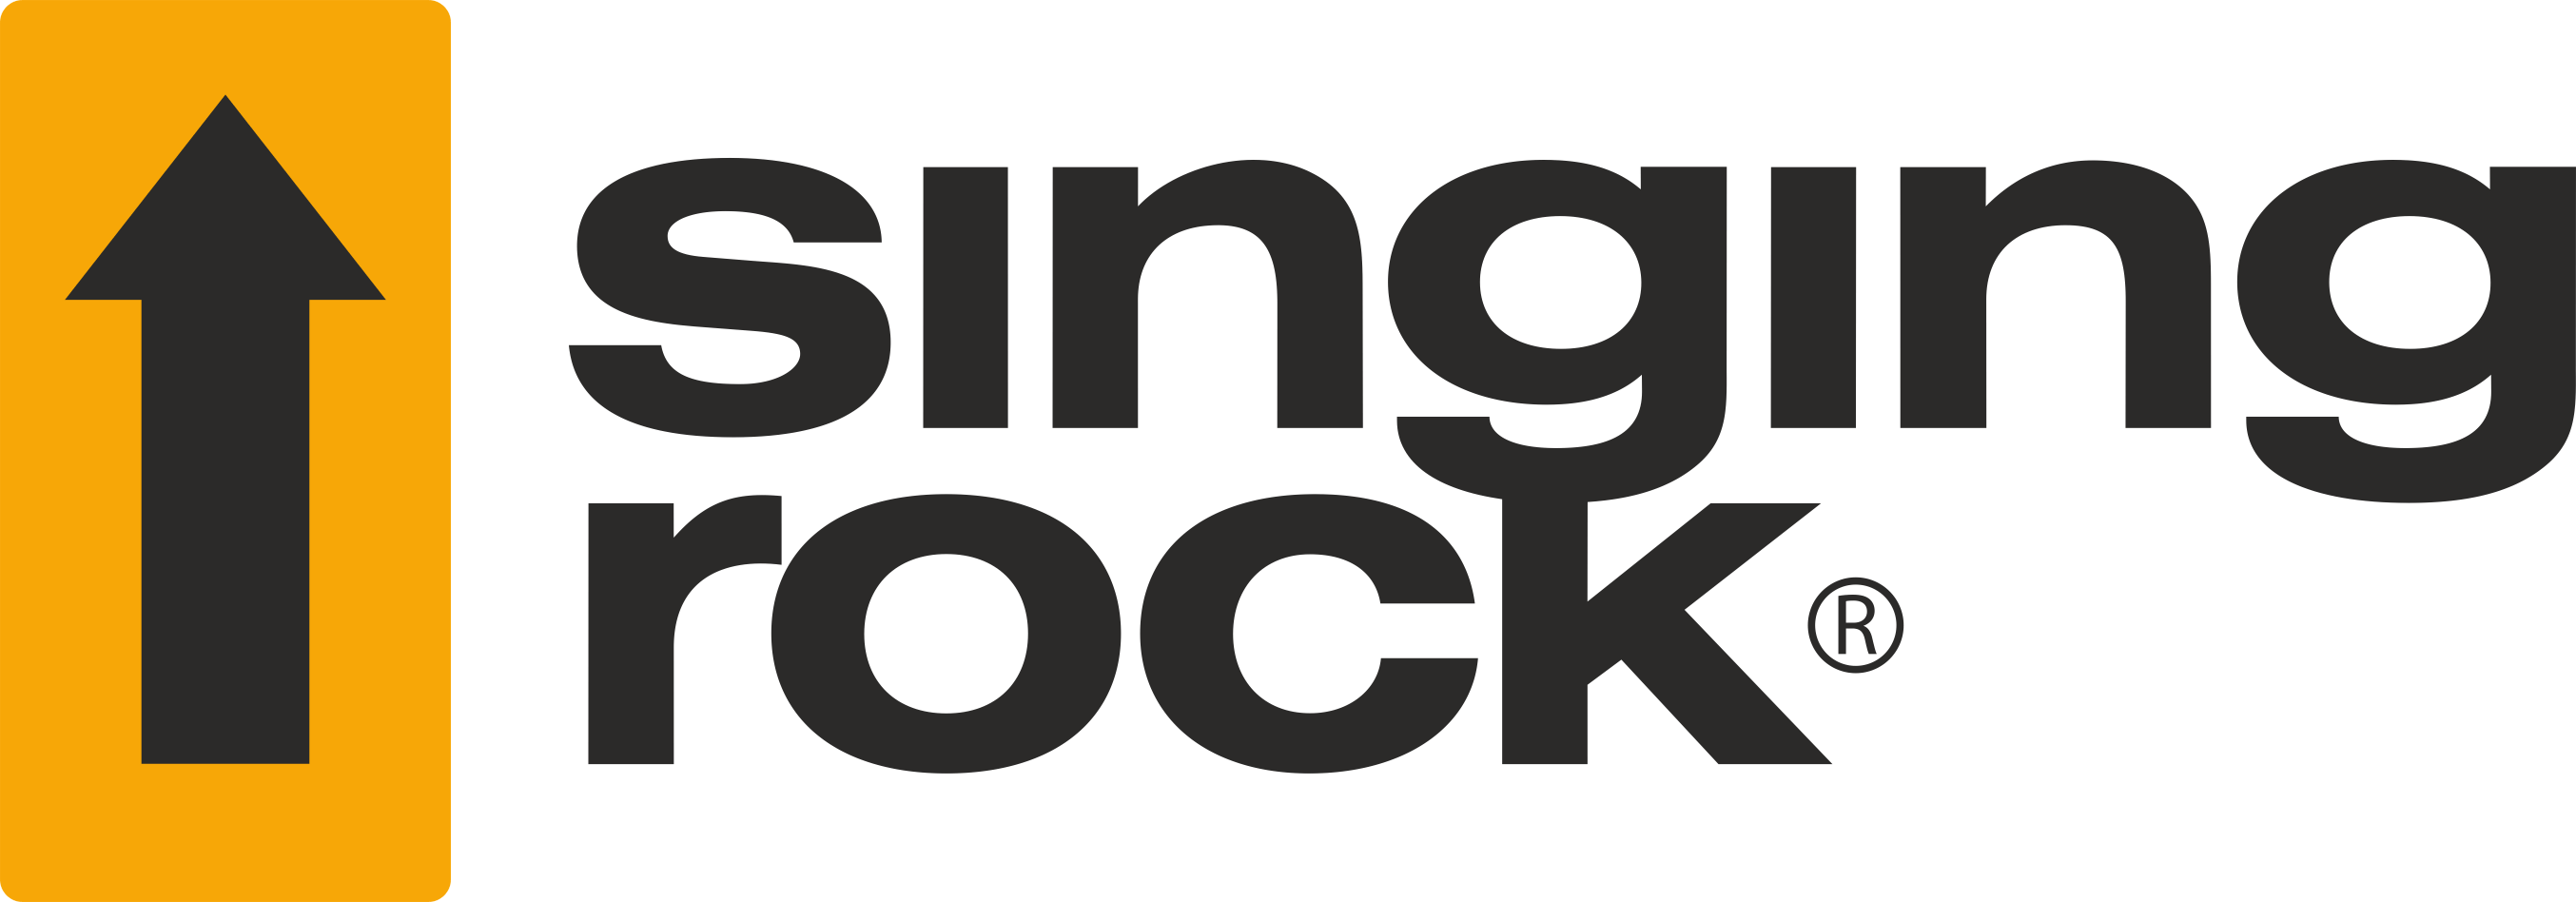  alpenverein, oeav, singing rock, logo